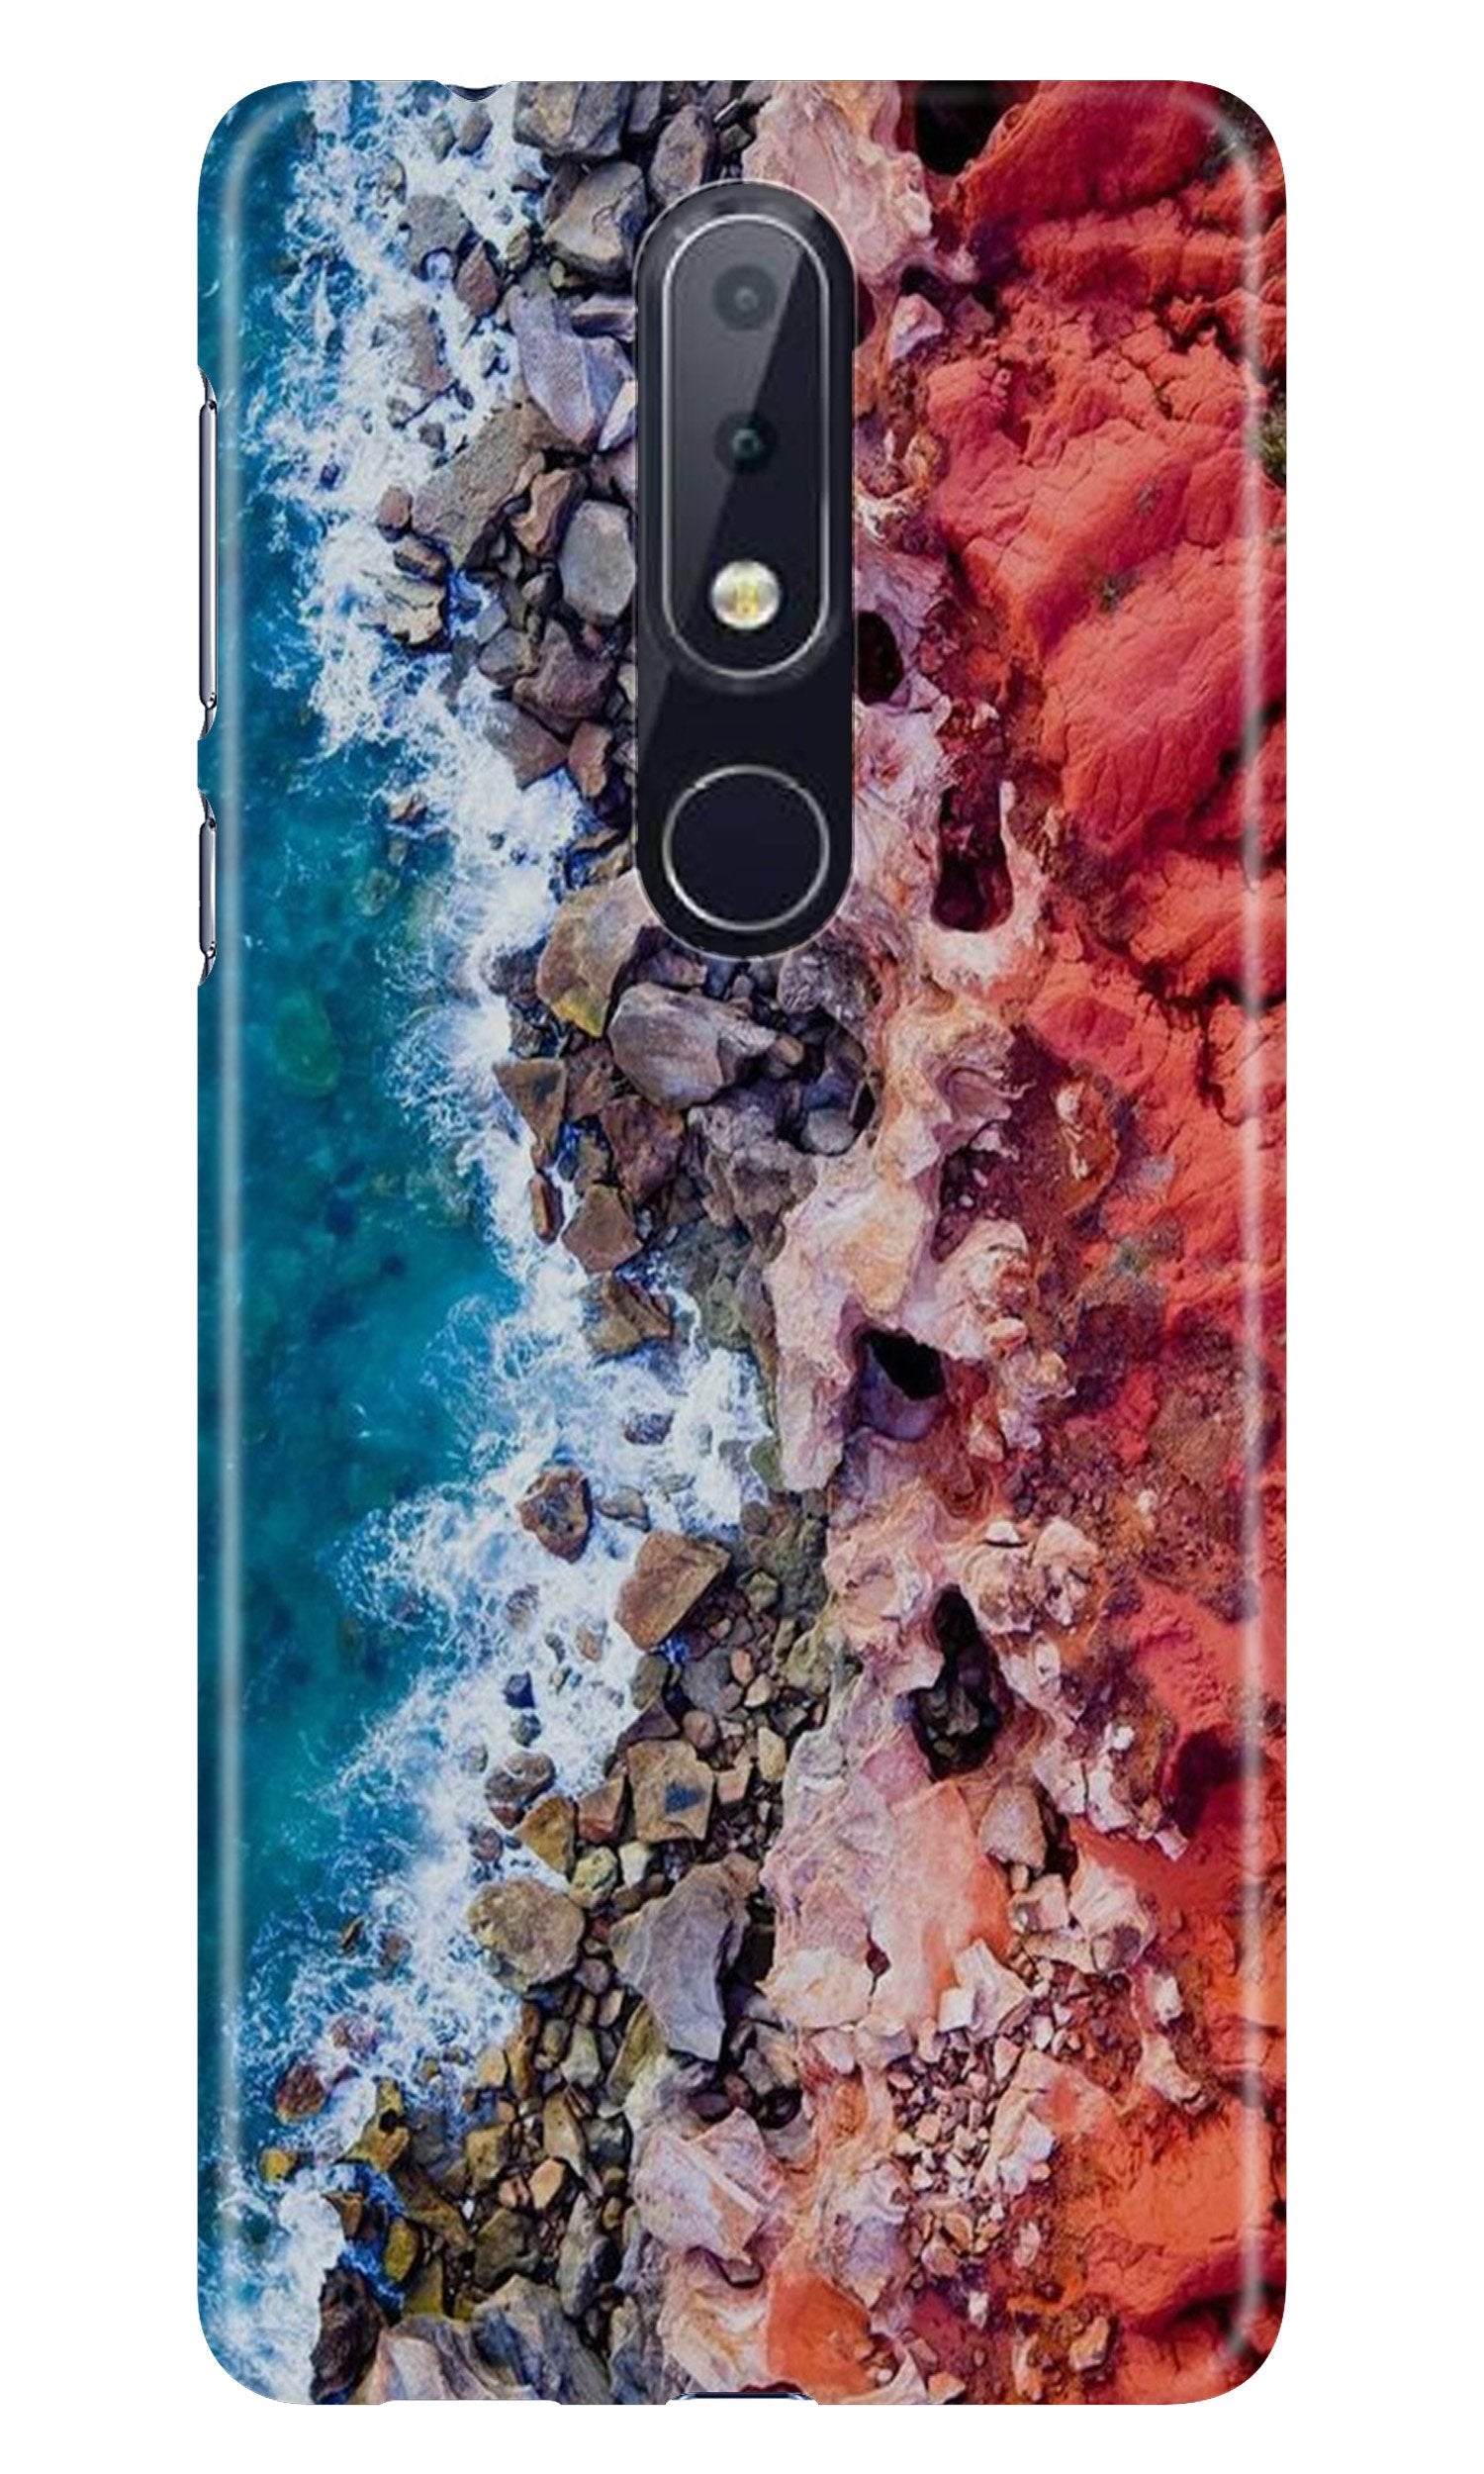 Sea Shore Case for Nokia 4.2 (Design No. 273)